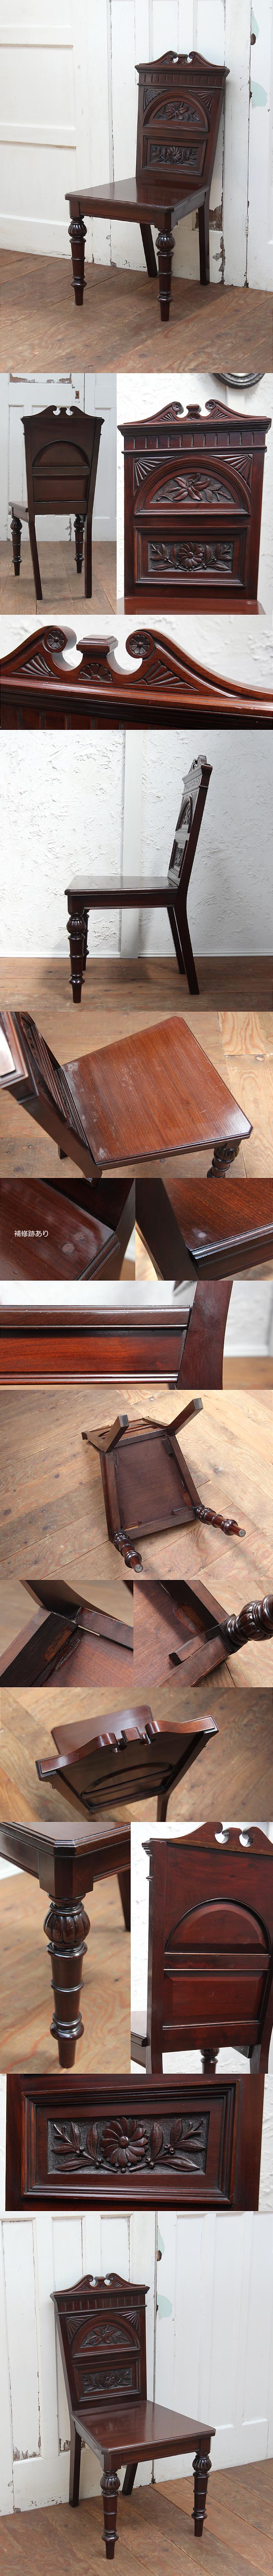 イギリス アンティーク調 ダイニングチェア 木製椅子 彫刻 インテリア 家具「バルボスレッグ」P-301